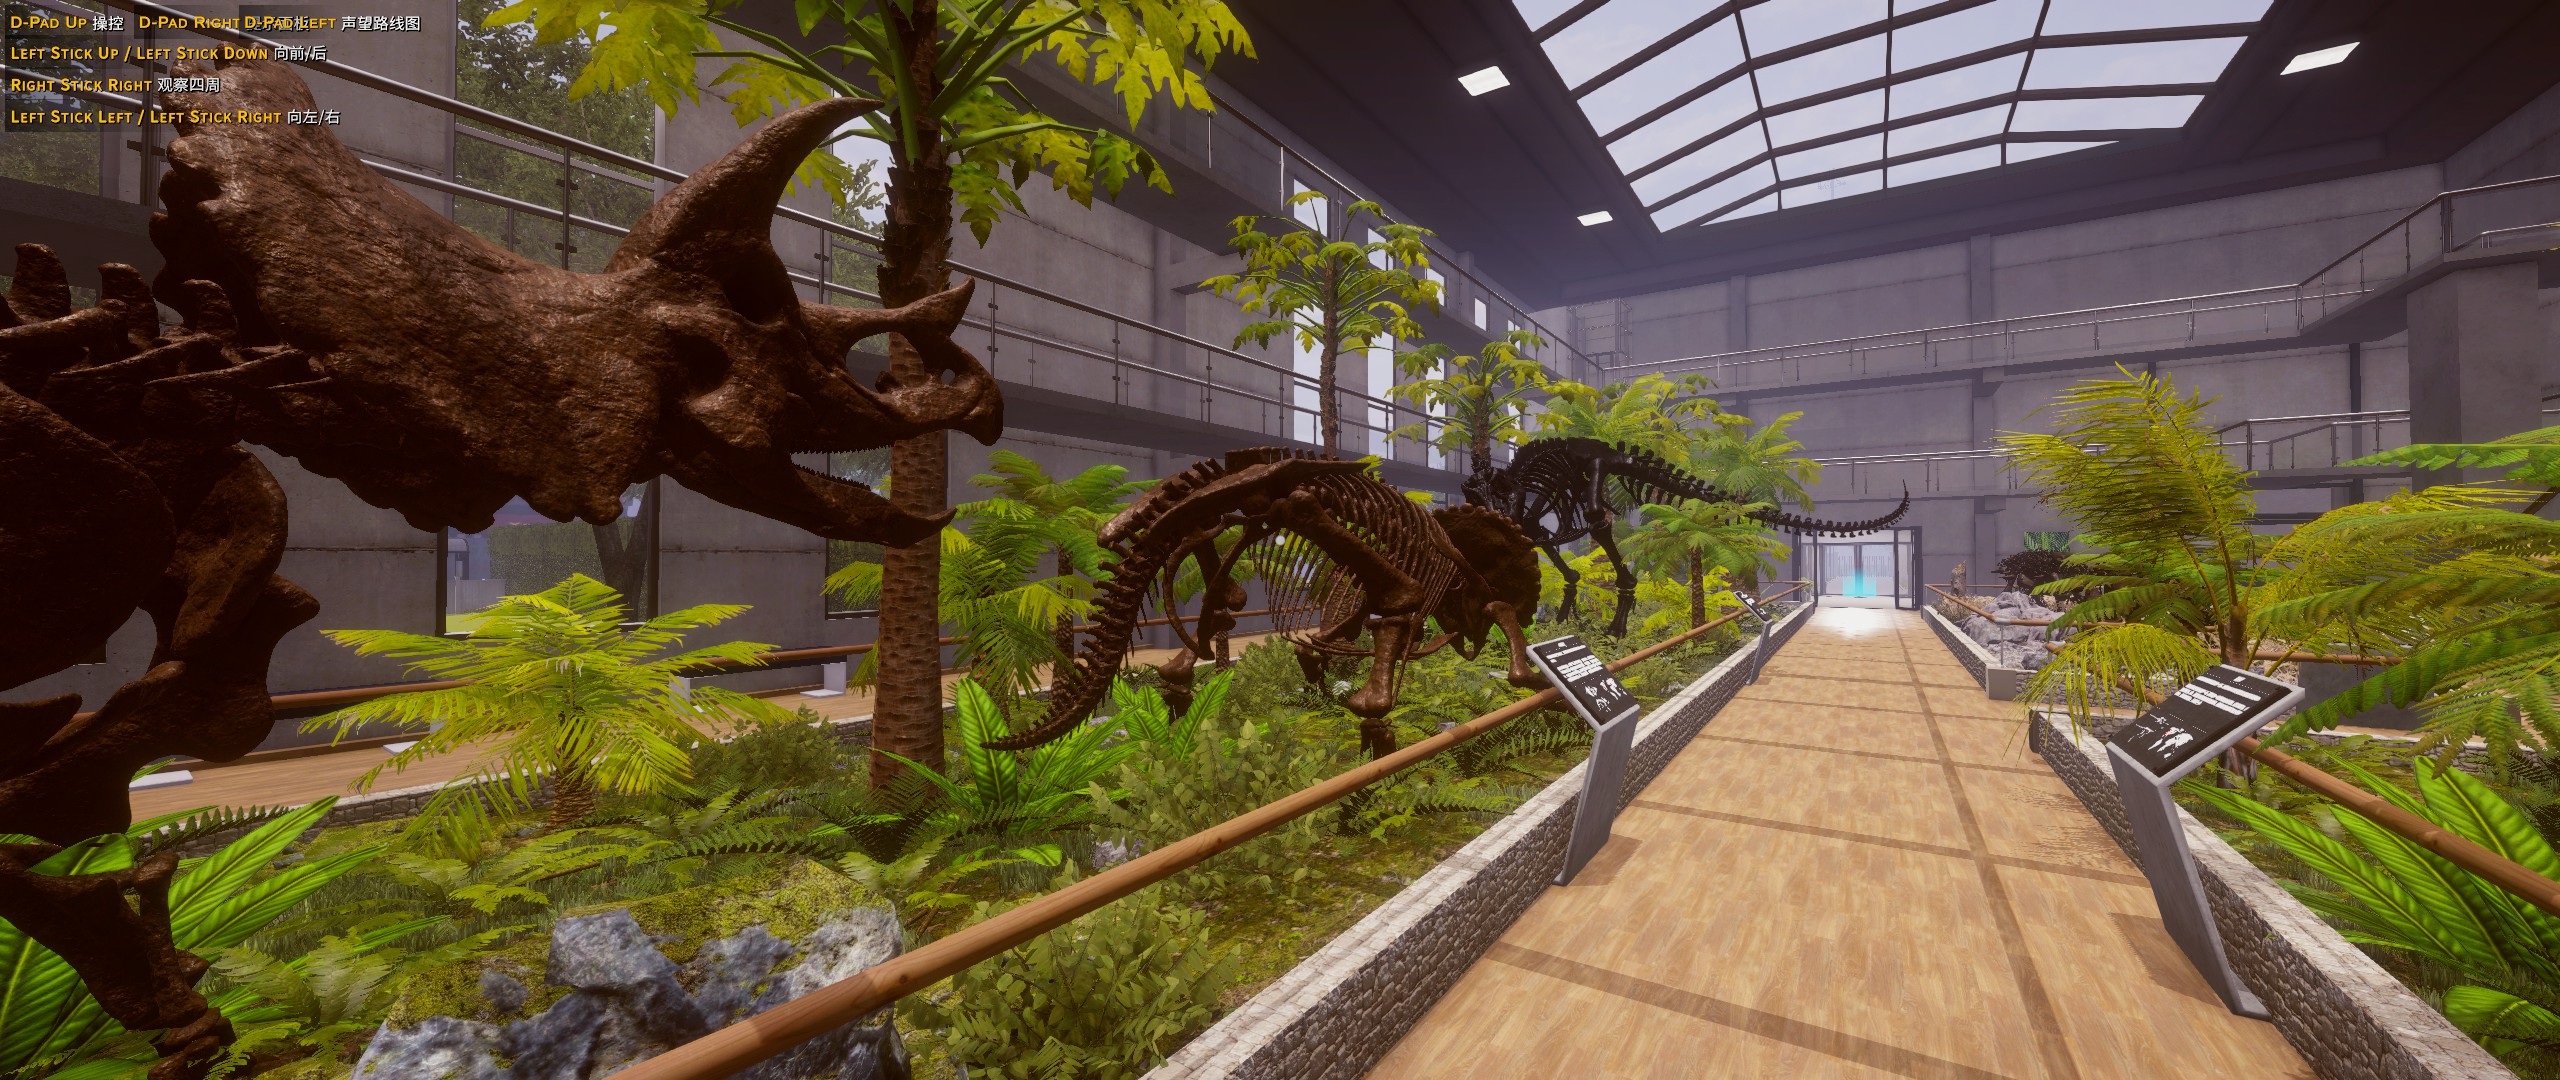 恐龙化石猎人 古生物学家模拟器游戏评测20220608001